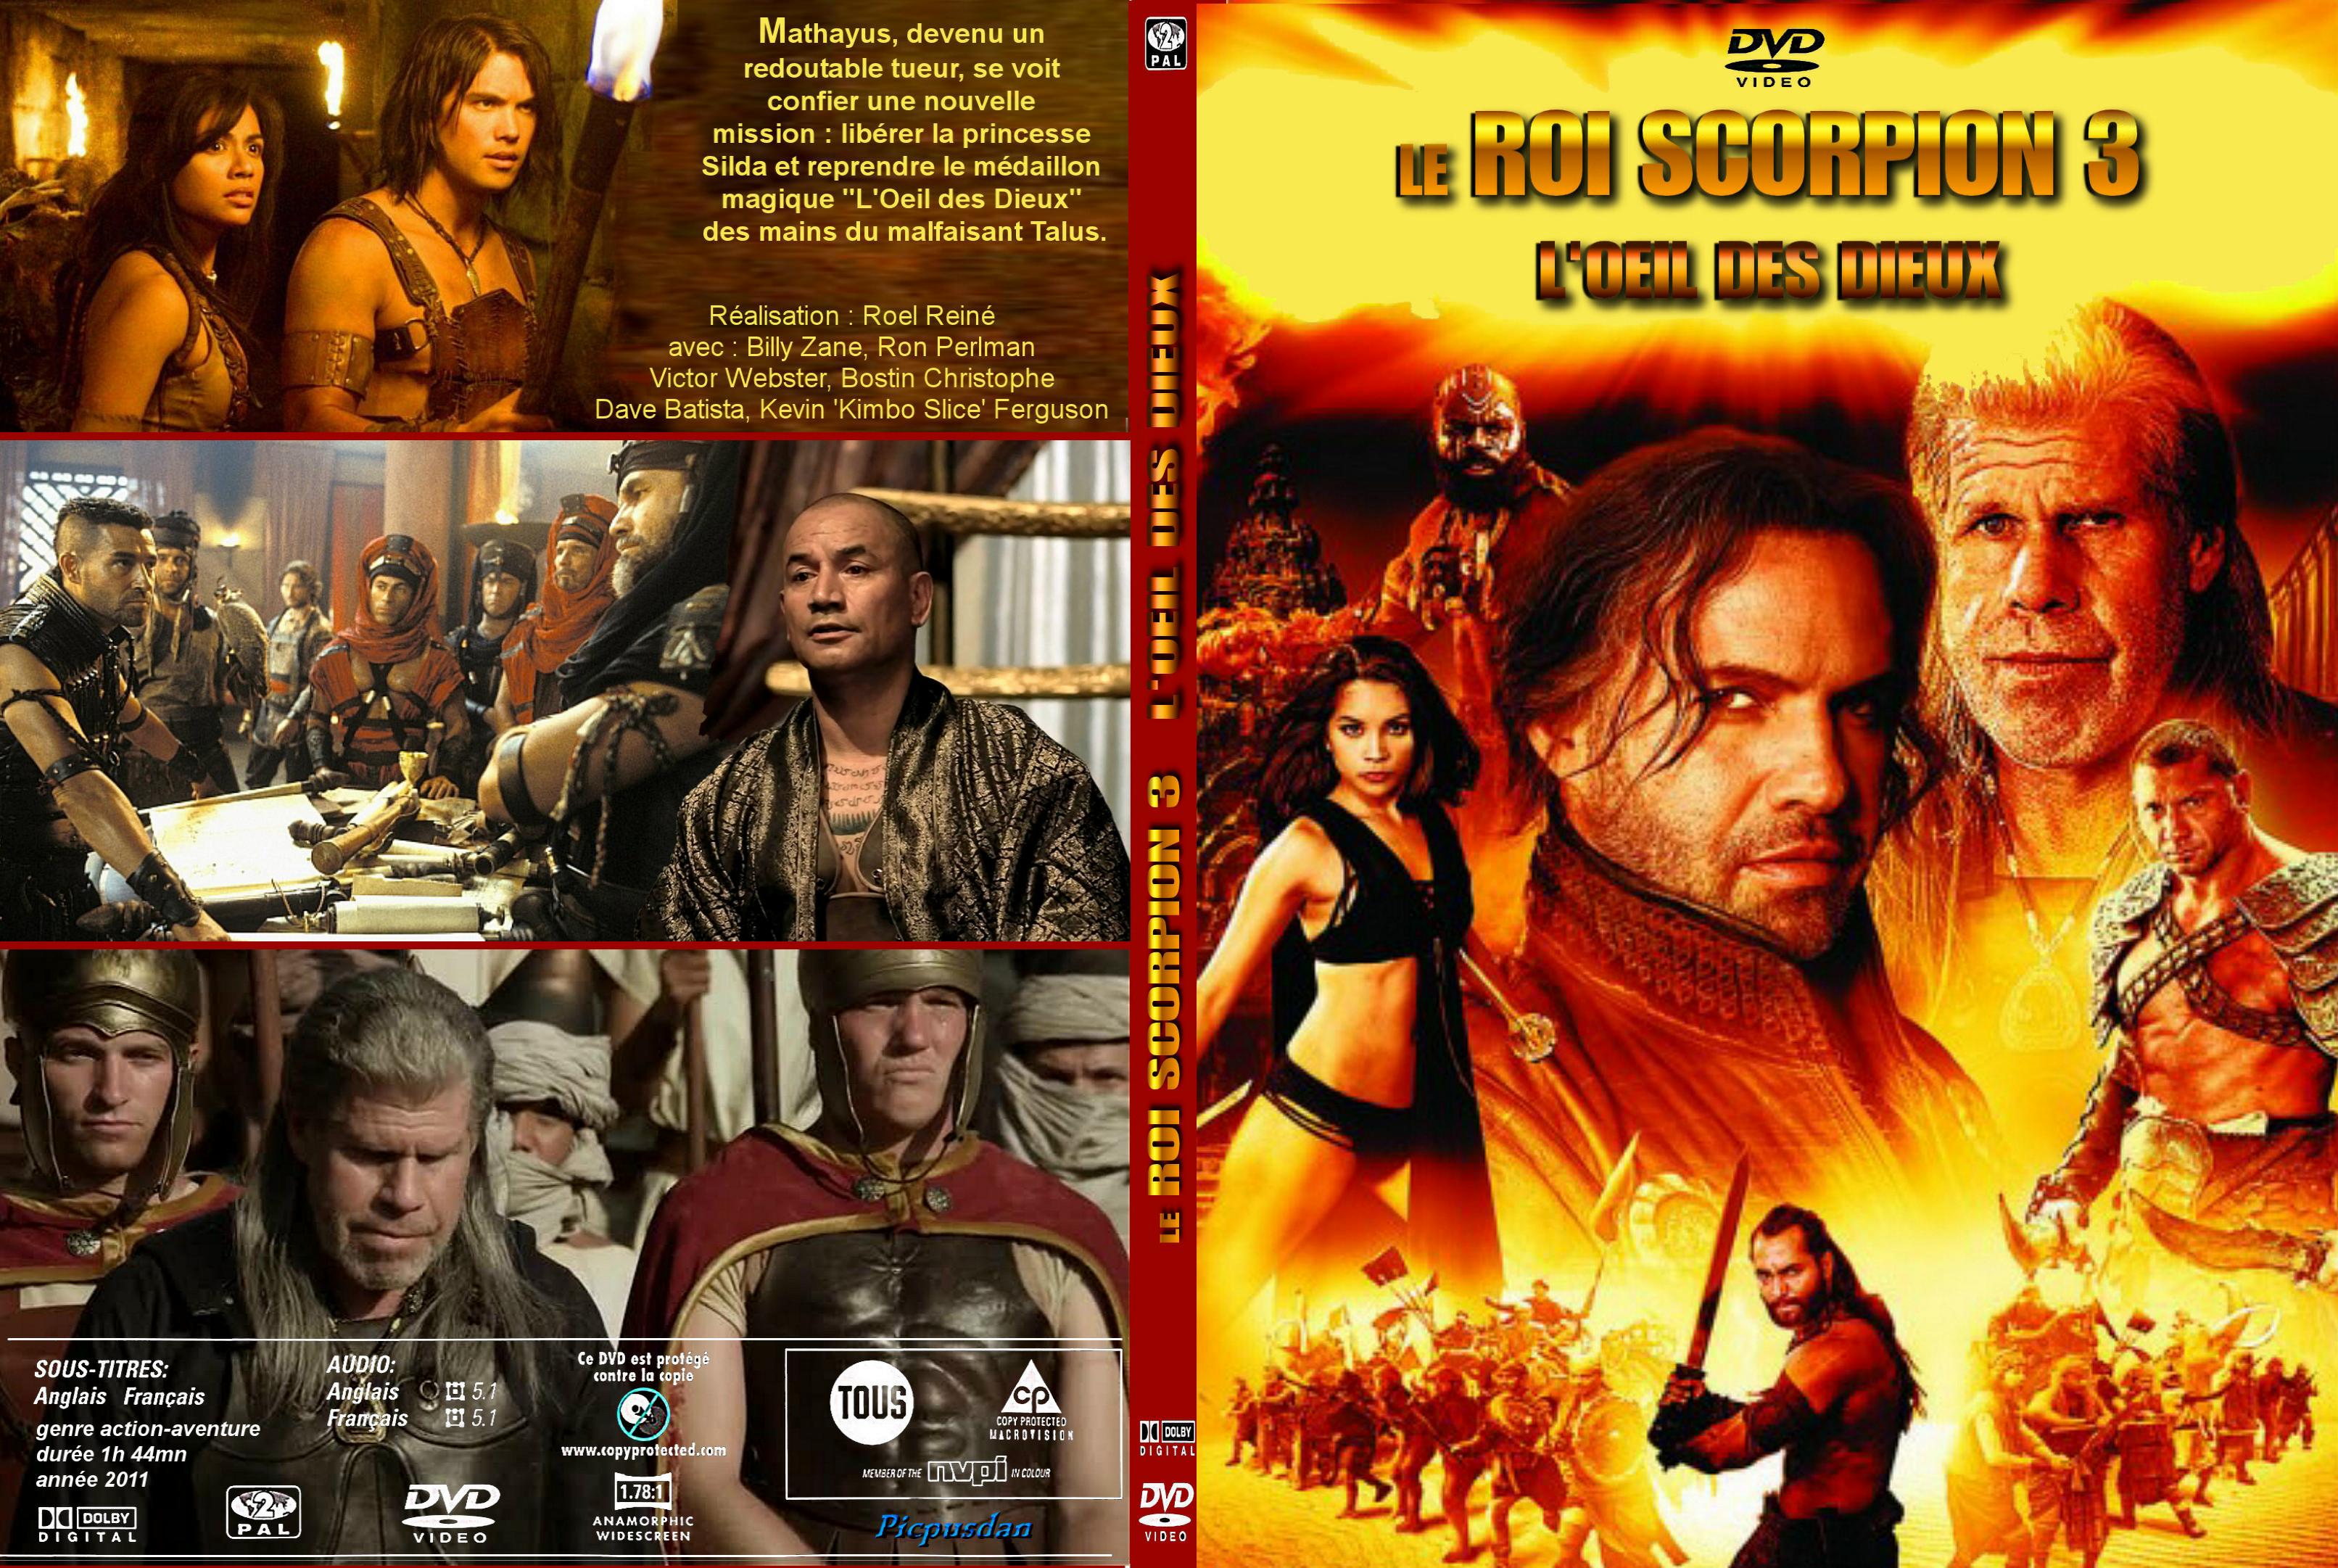 Jaquette DVD Le roi scorpion 3 - L